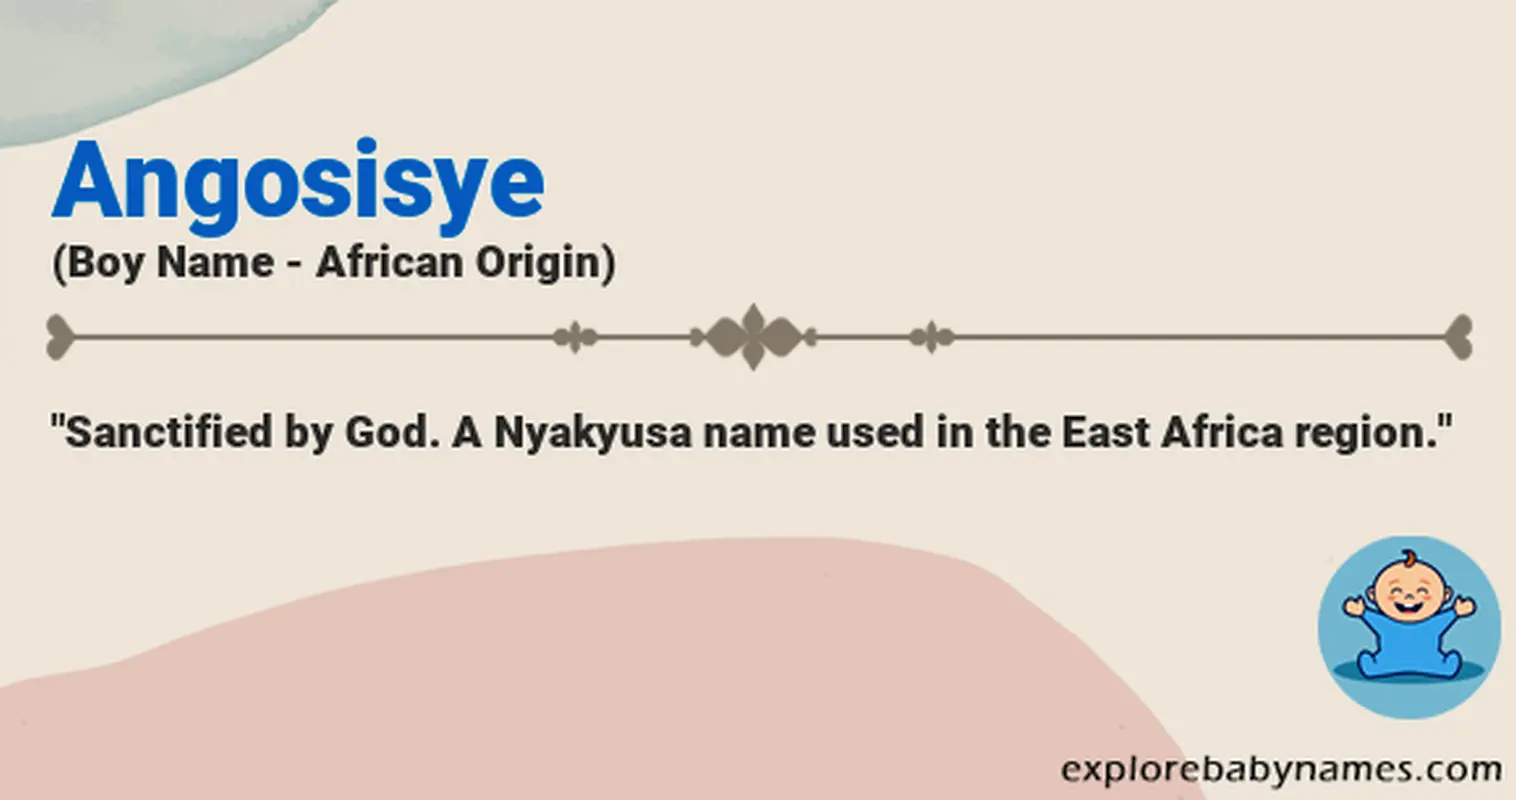 Meaning of Angosisye